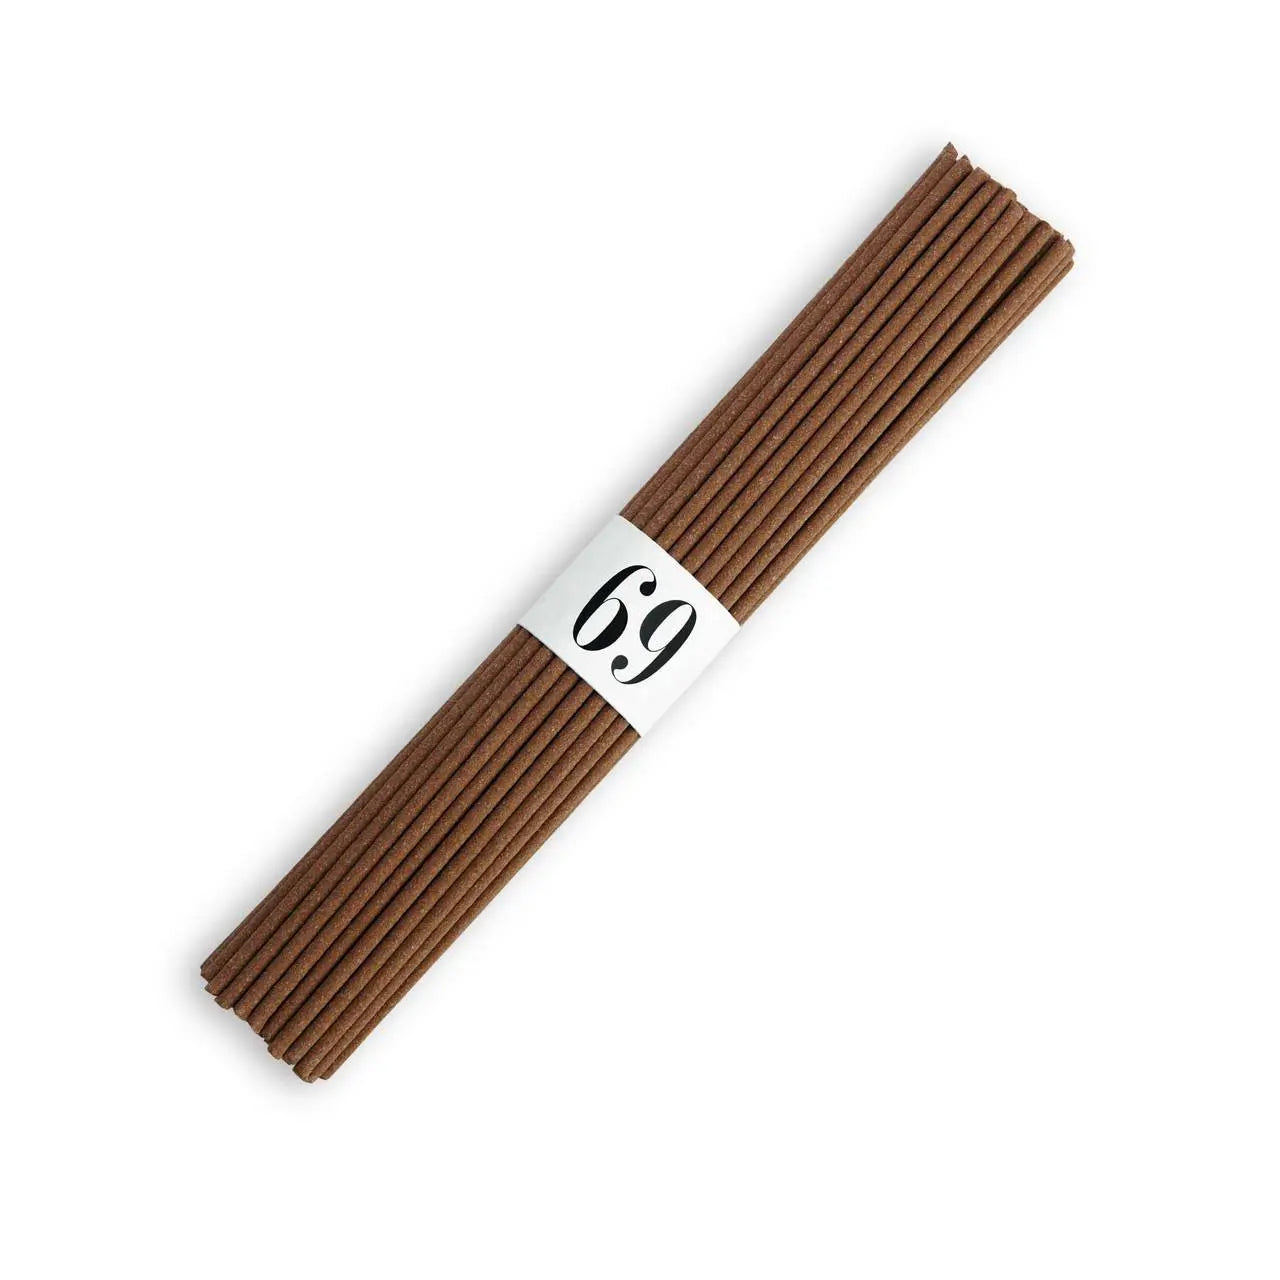 L'Objet Oh Mon Dieu! No. 69 Incense Sticks